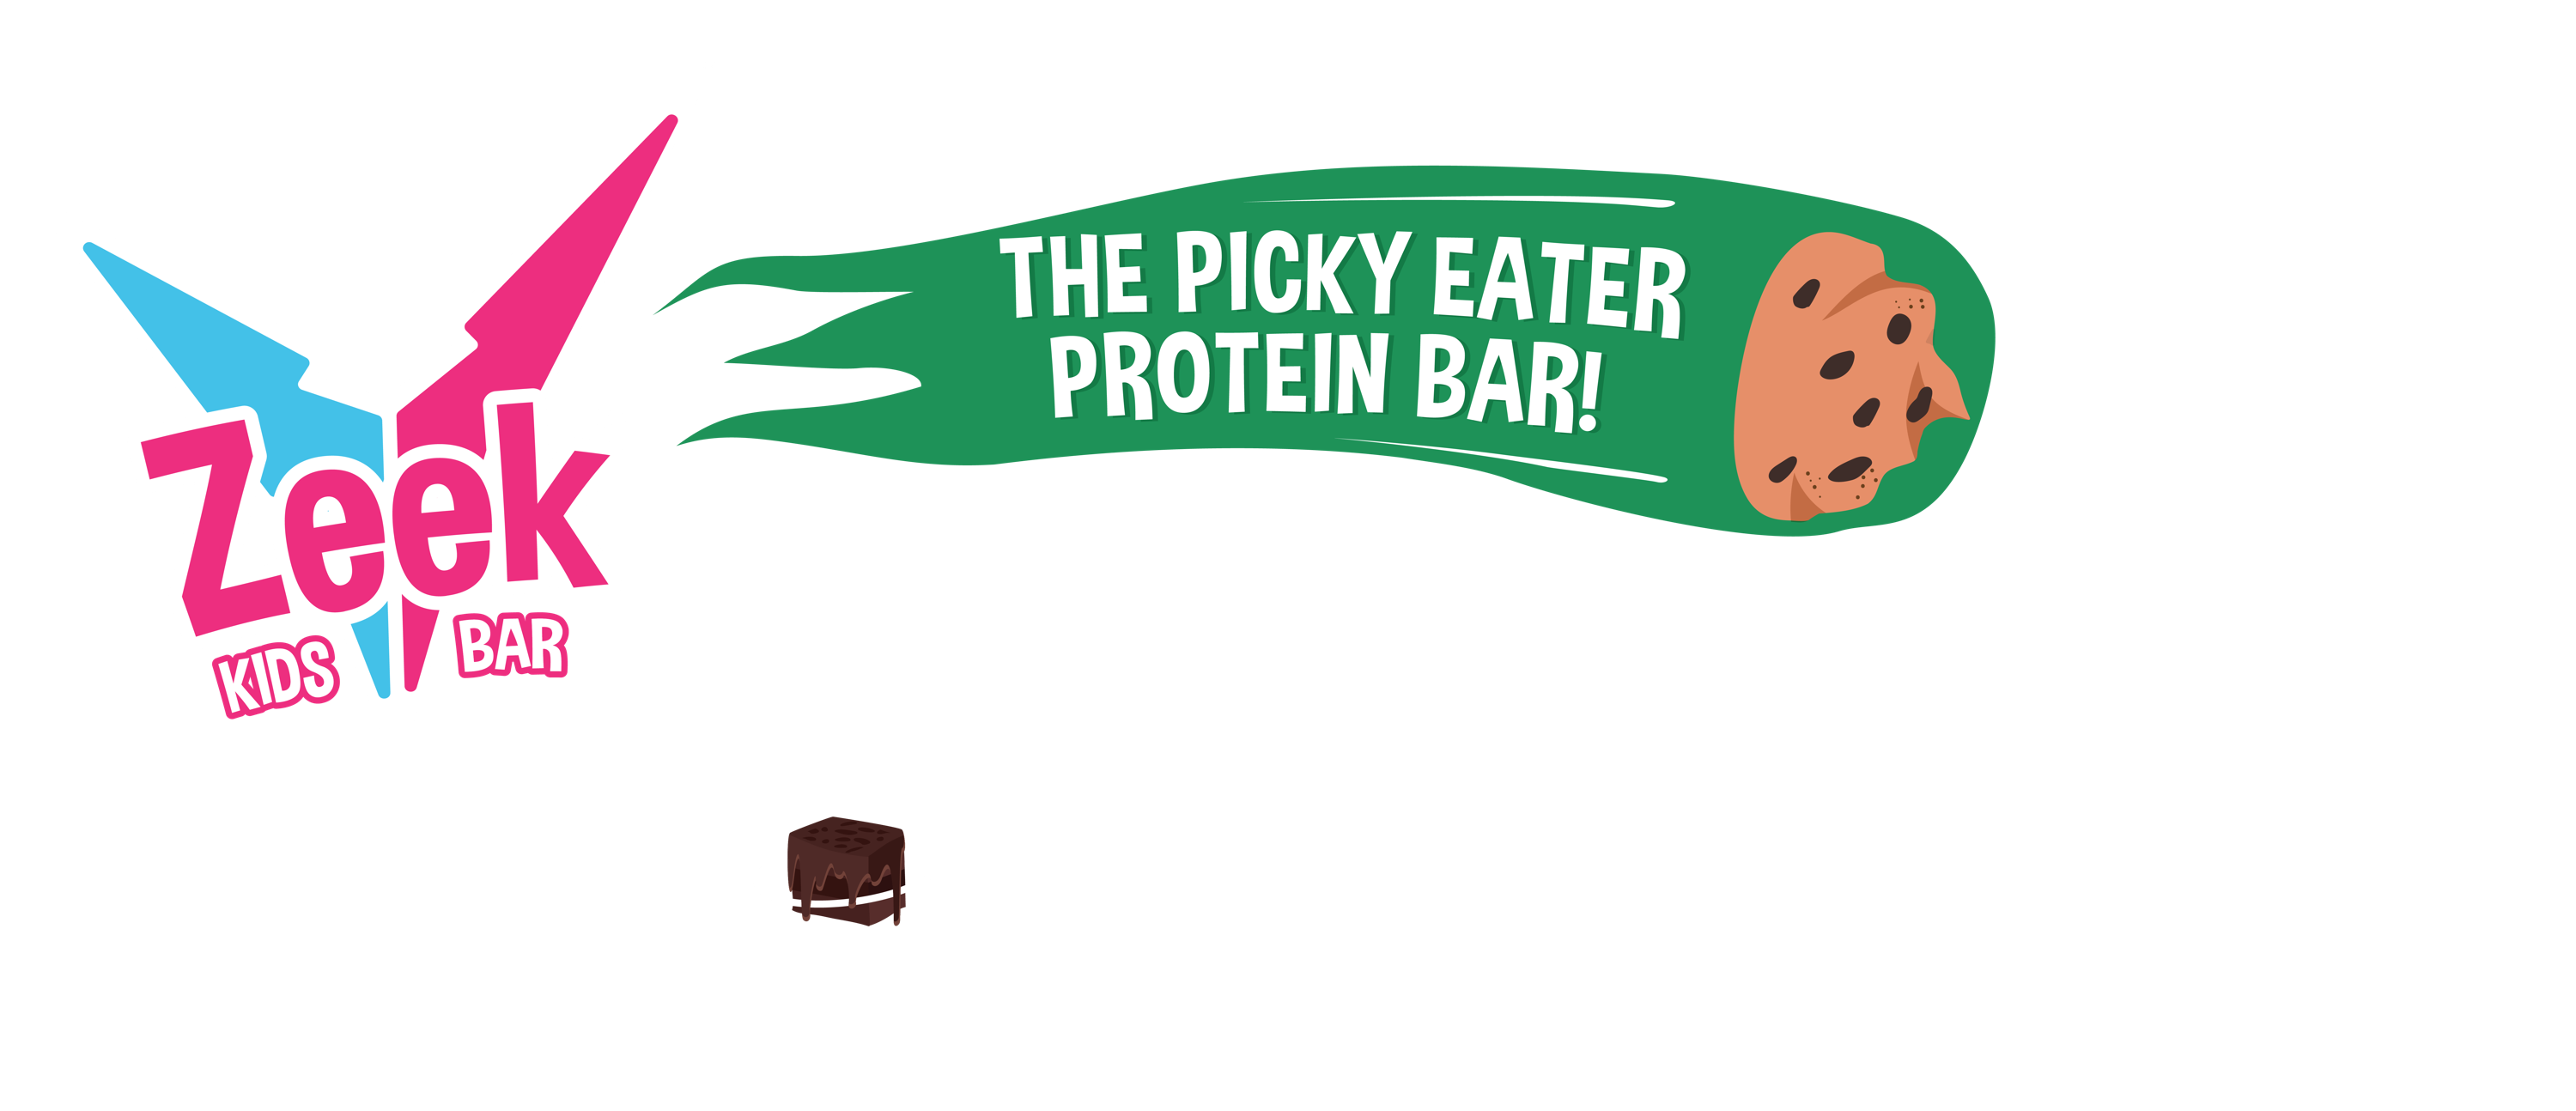 Zeek Kids Bar. The Picky Eater Protein Bar